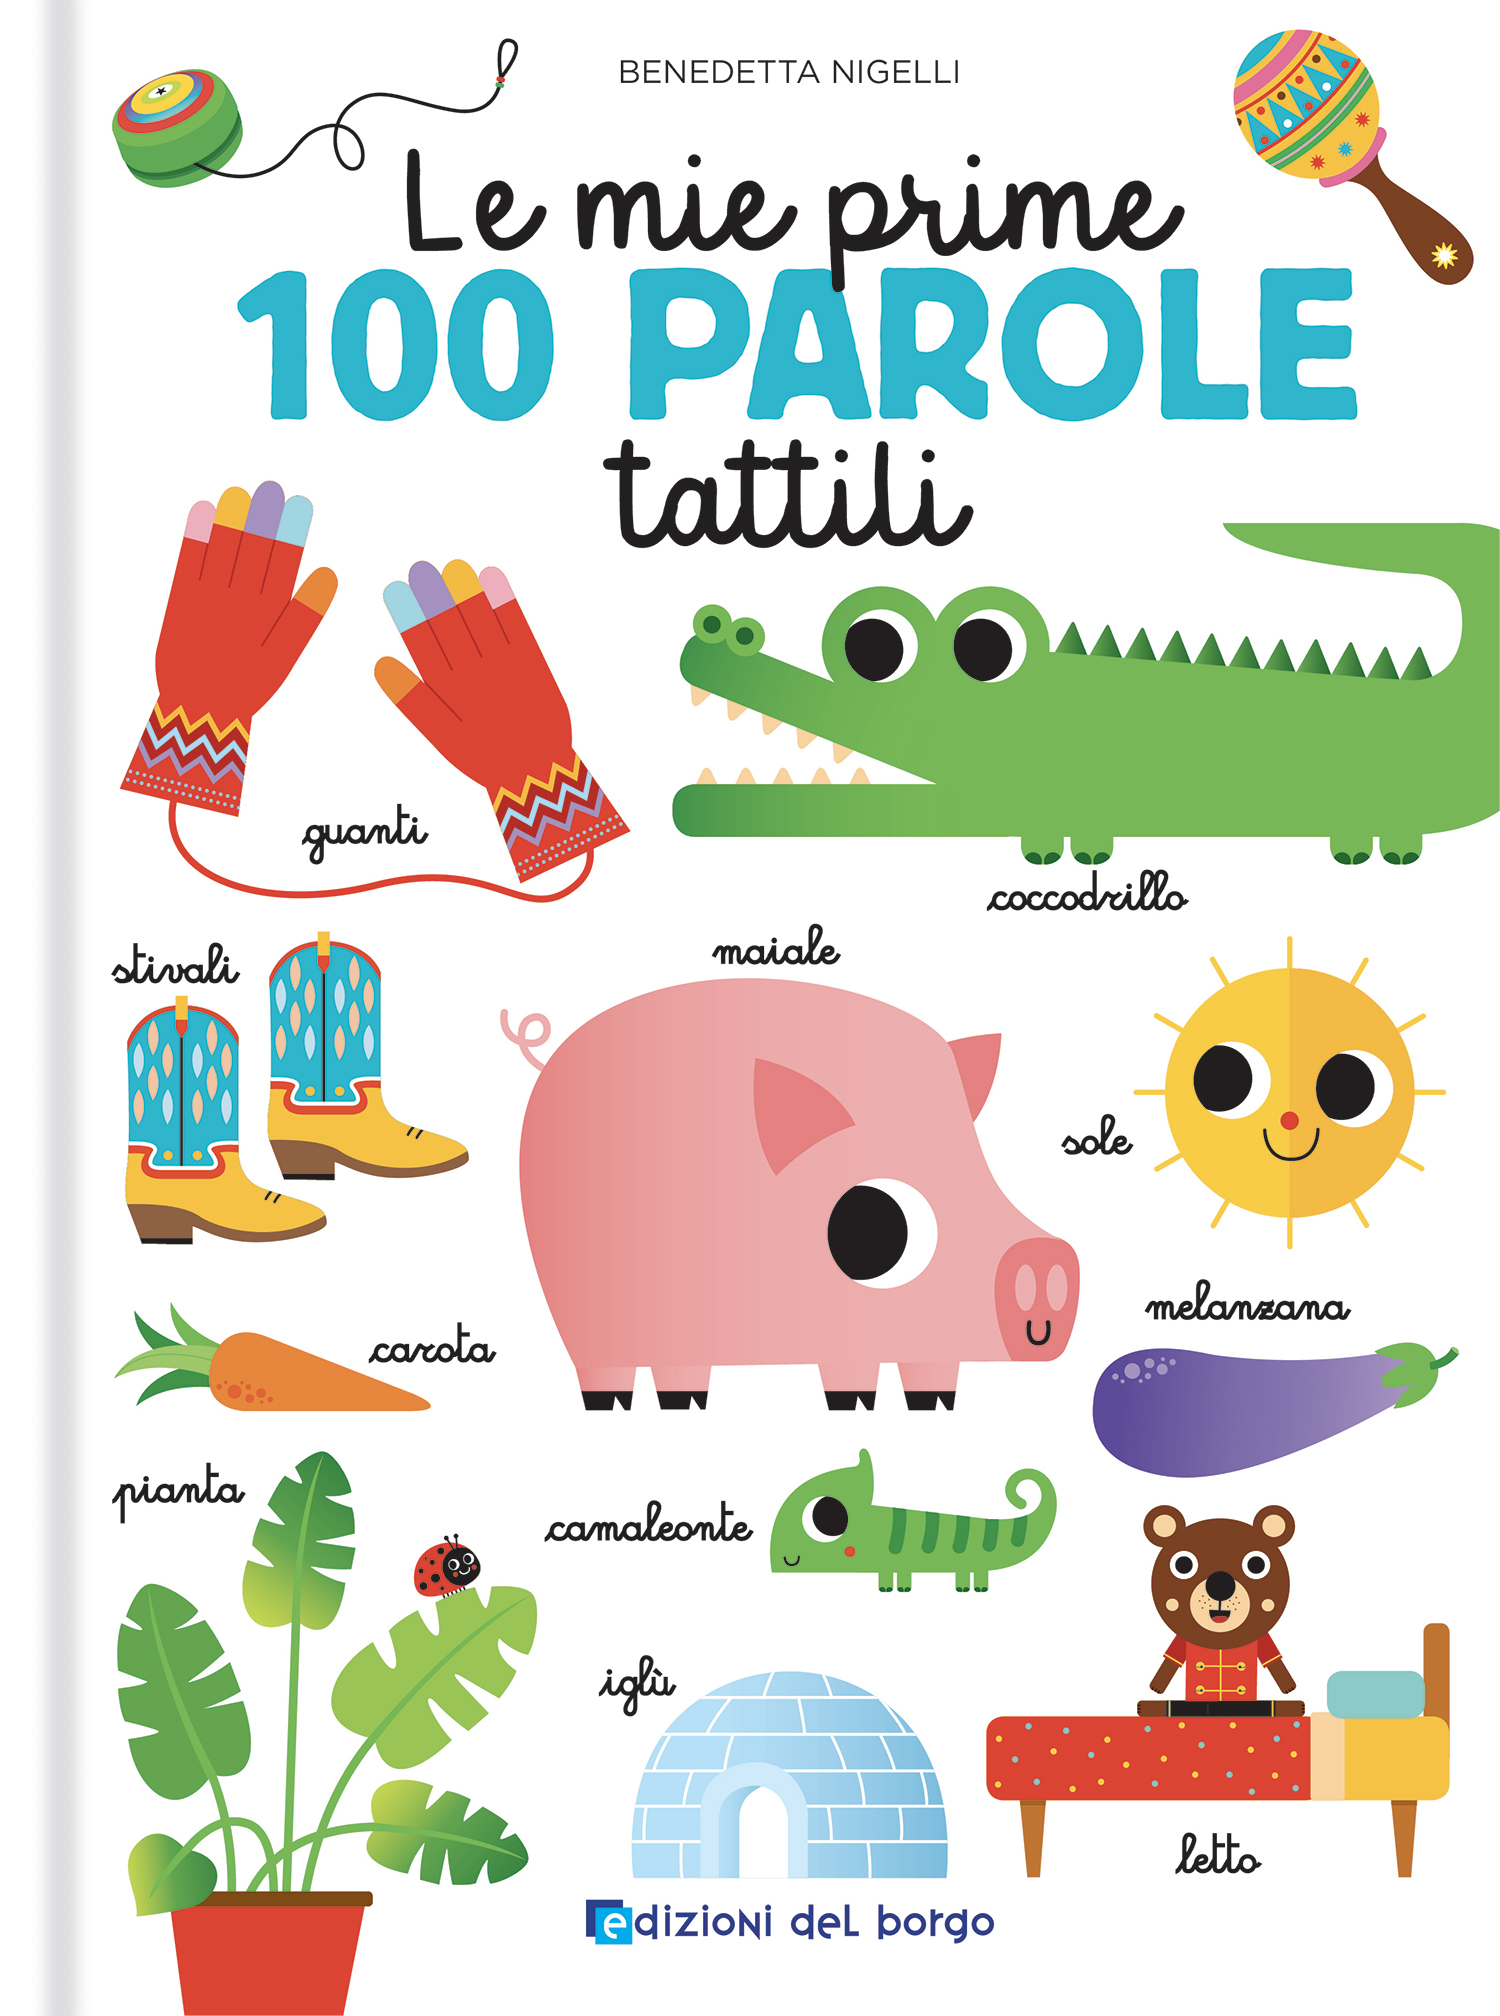 Le Mie Prime 100 Parole Tattili By Benedetta Nigelli – I AM Books